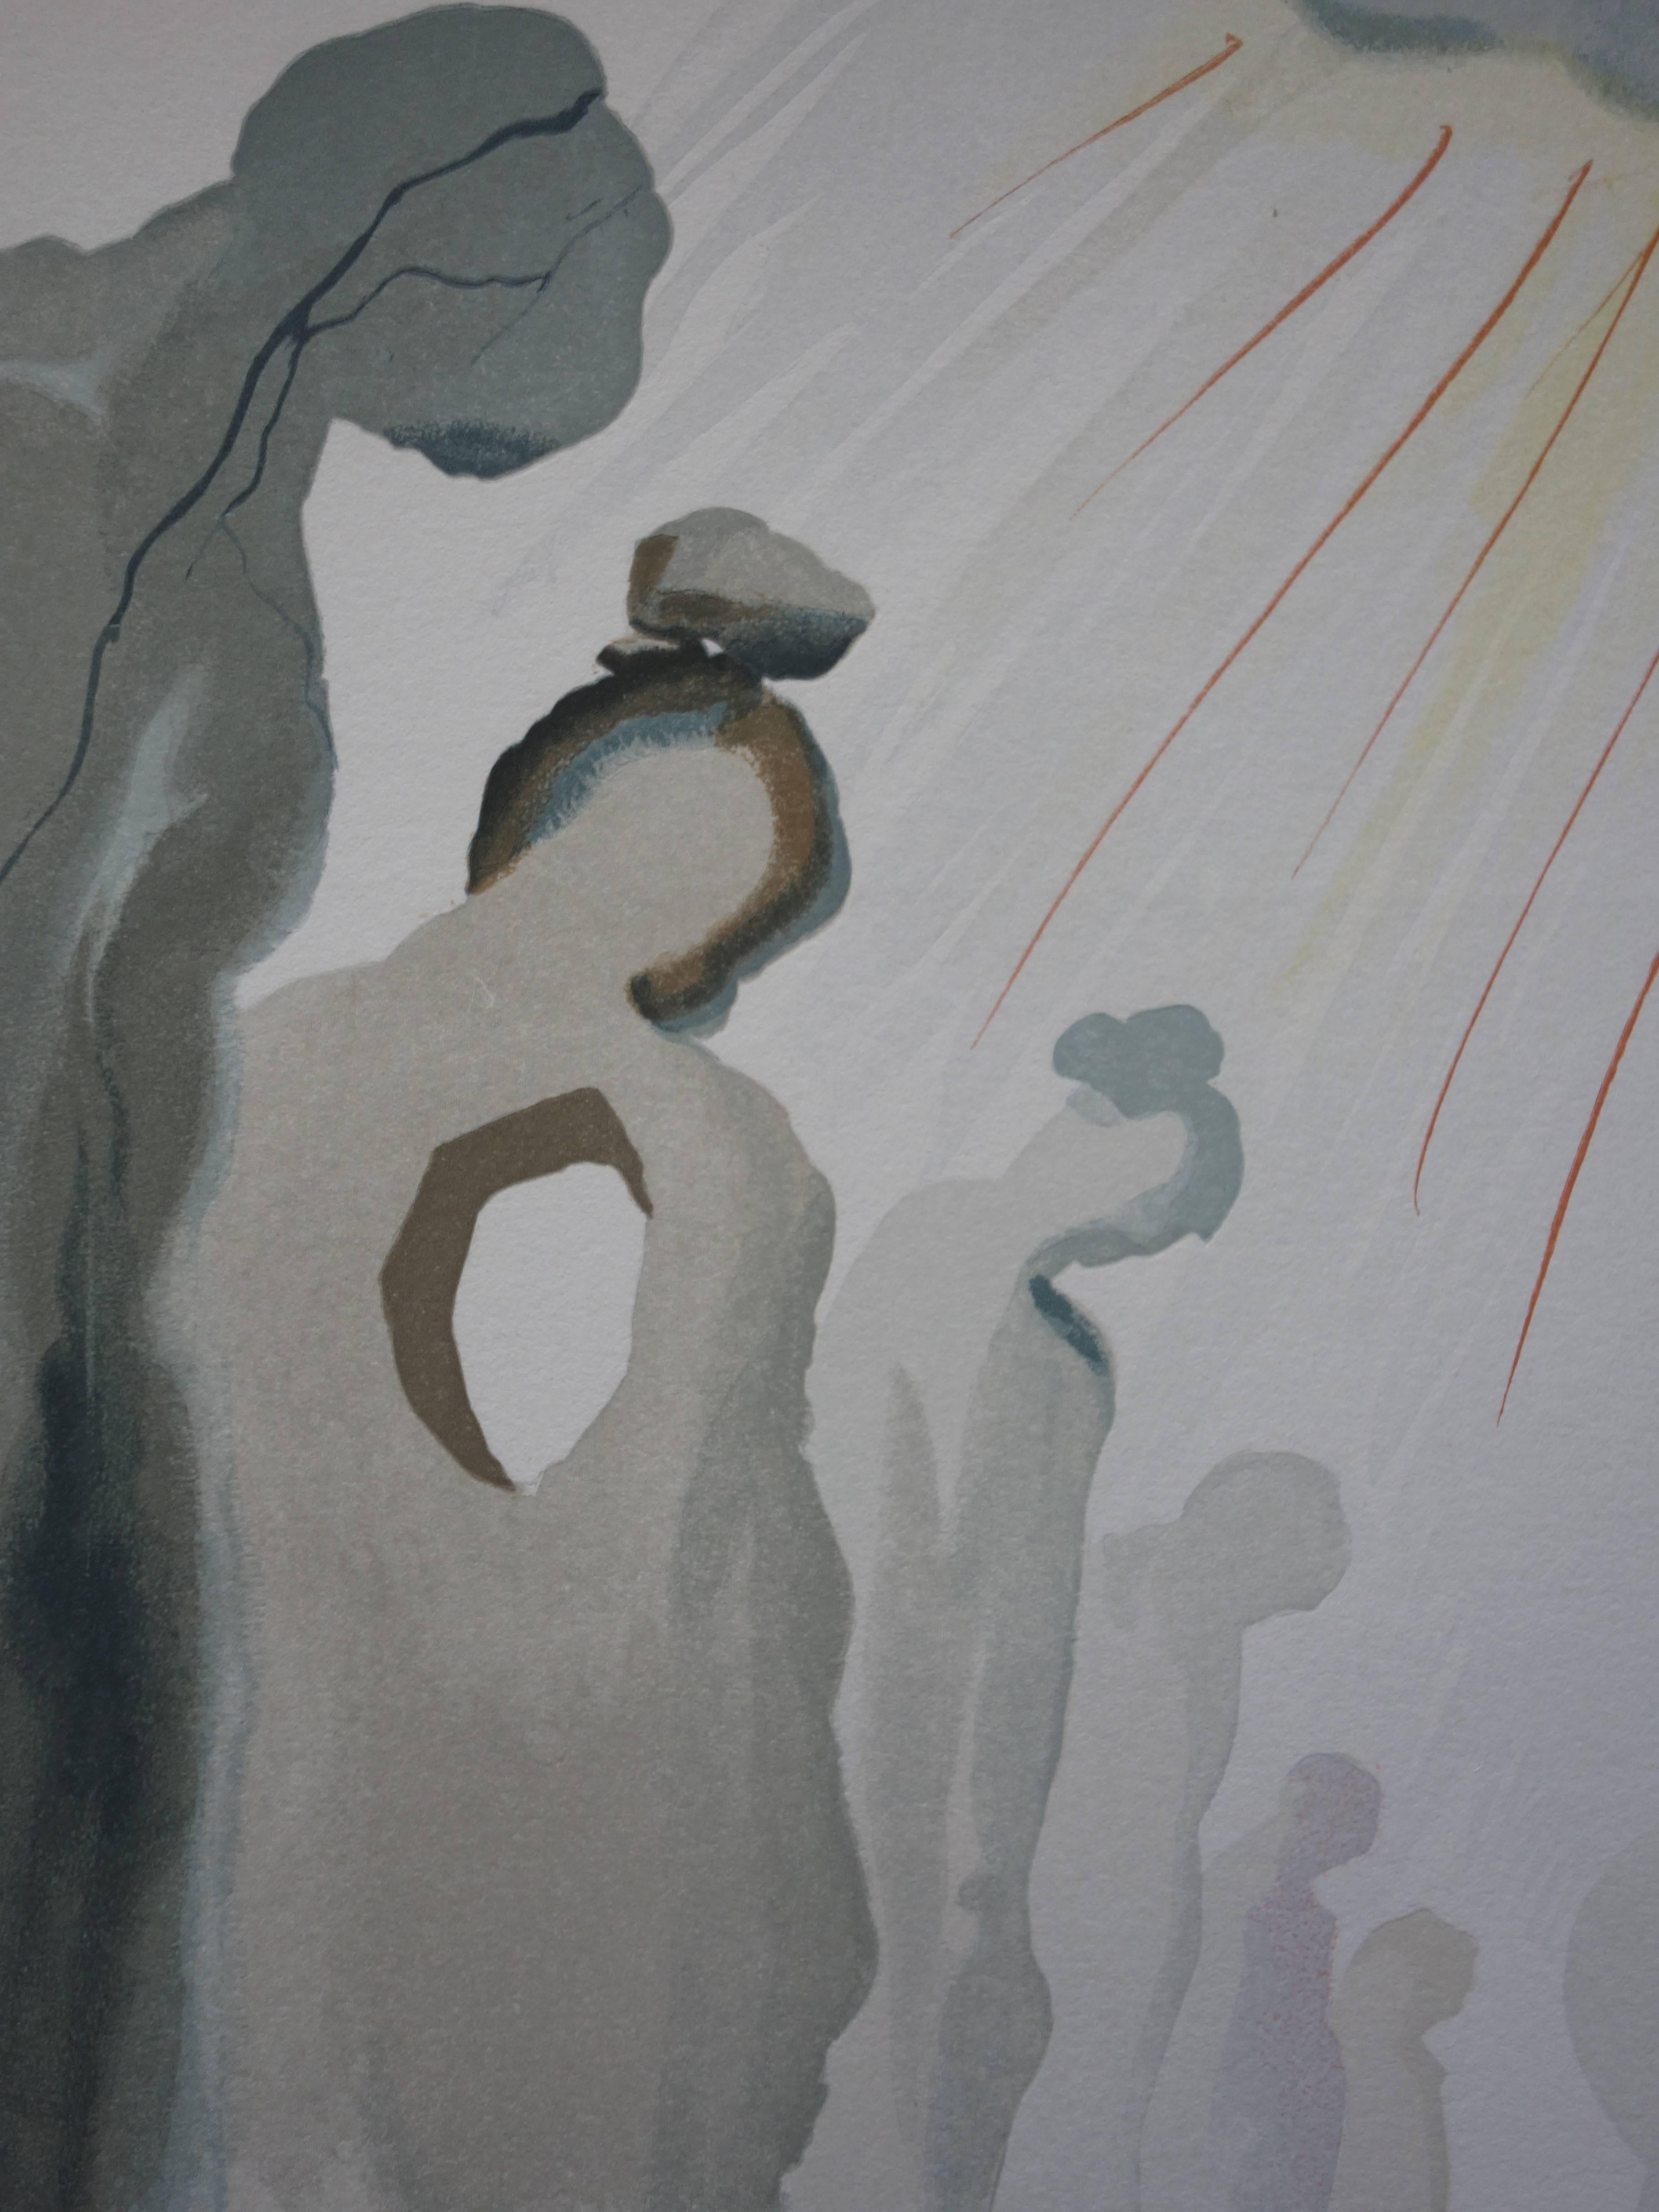 Salvador Dali (1904-1989)
Purgatoire 13 - La deuxième terrasse

Gravure sur bois en couleur sur papier
Signature imprimée
1960/63
Imprimé sur papier Vélin BFK Rives
Taille 32,8 x 26,4 cm (c. 13 x 10